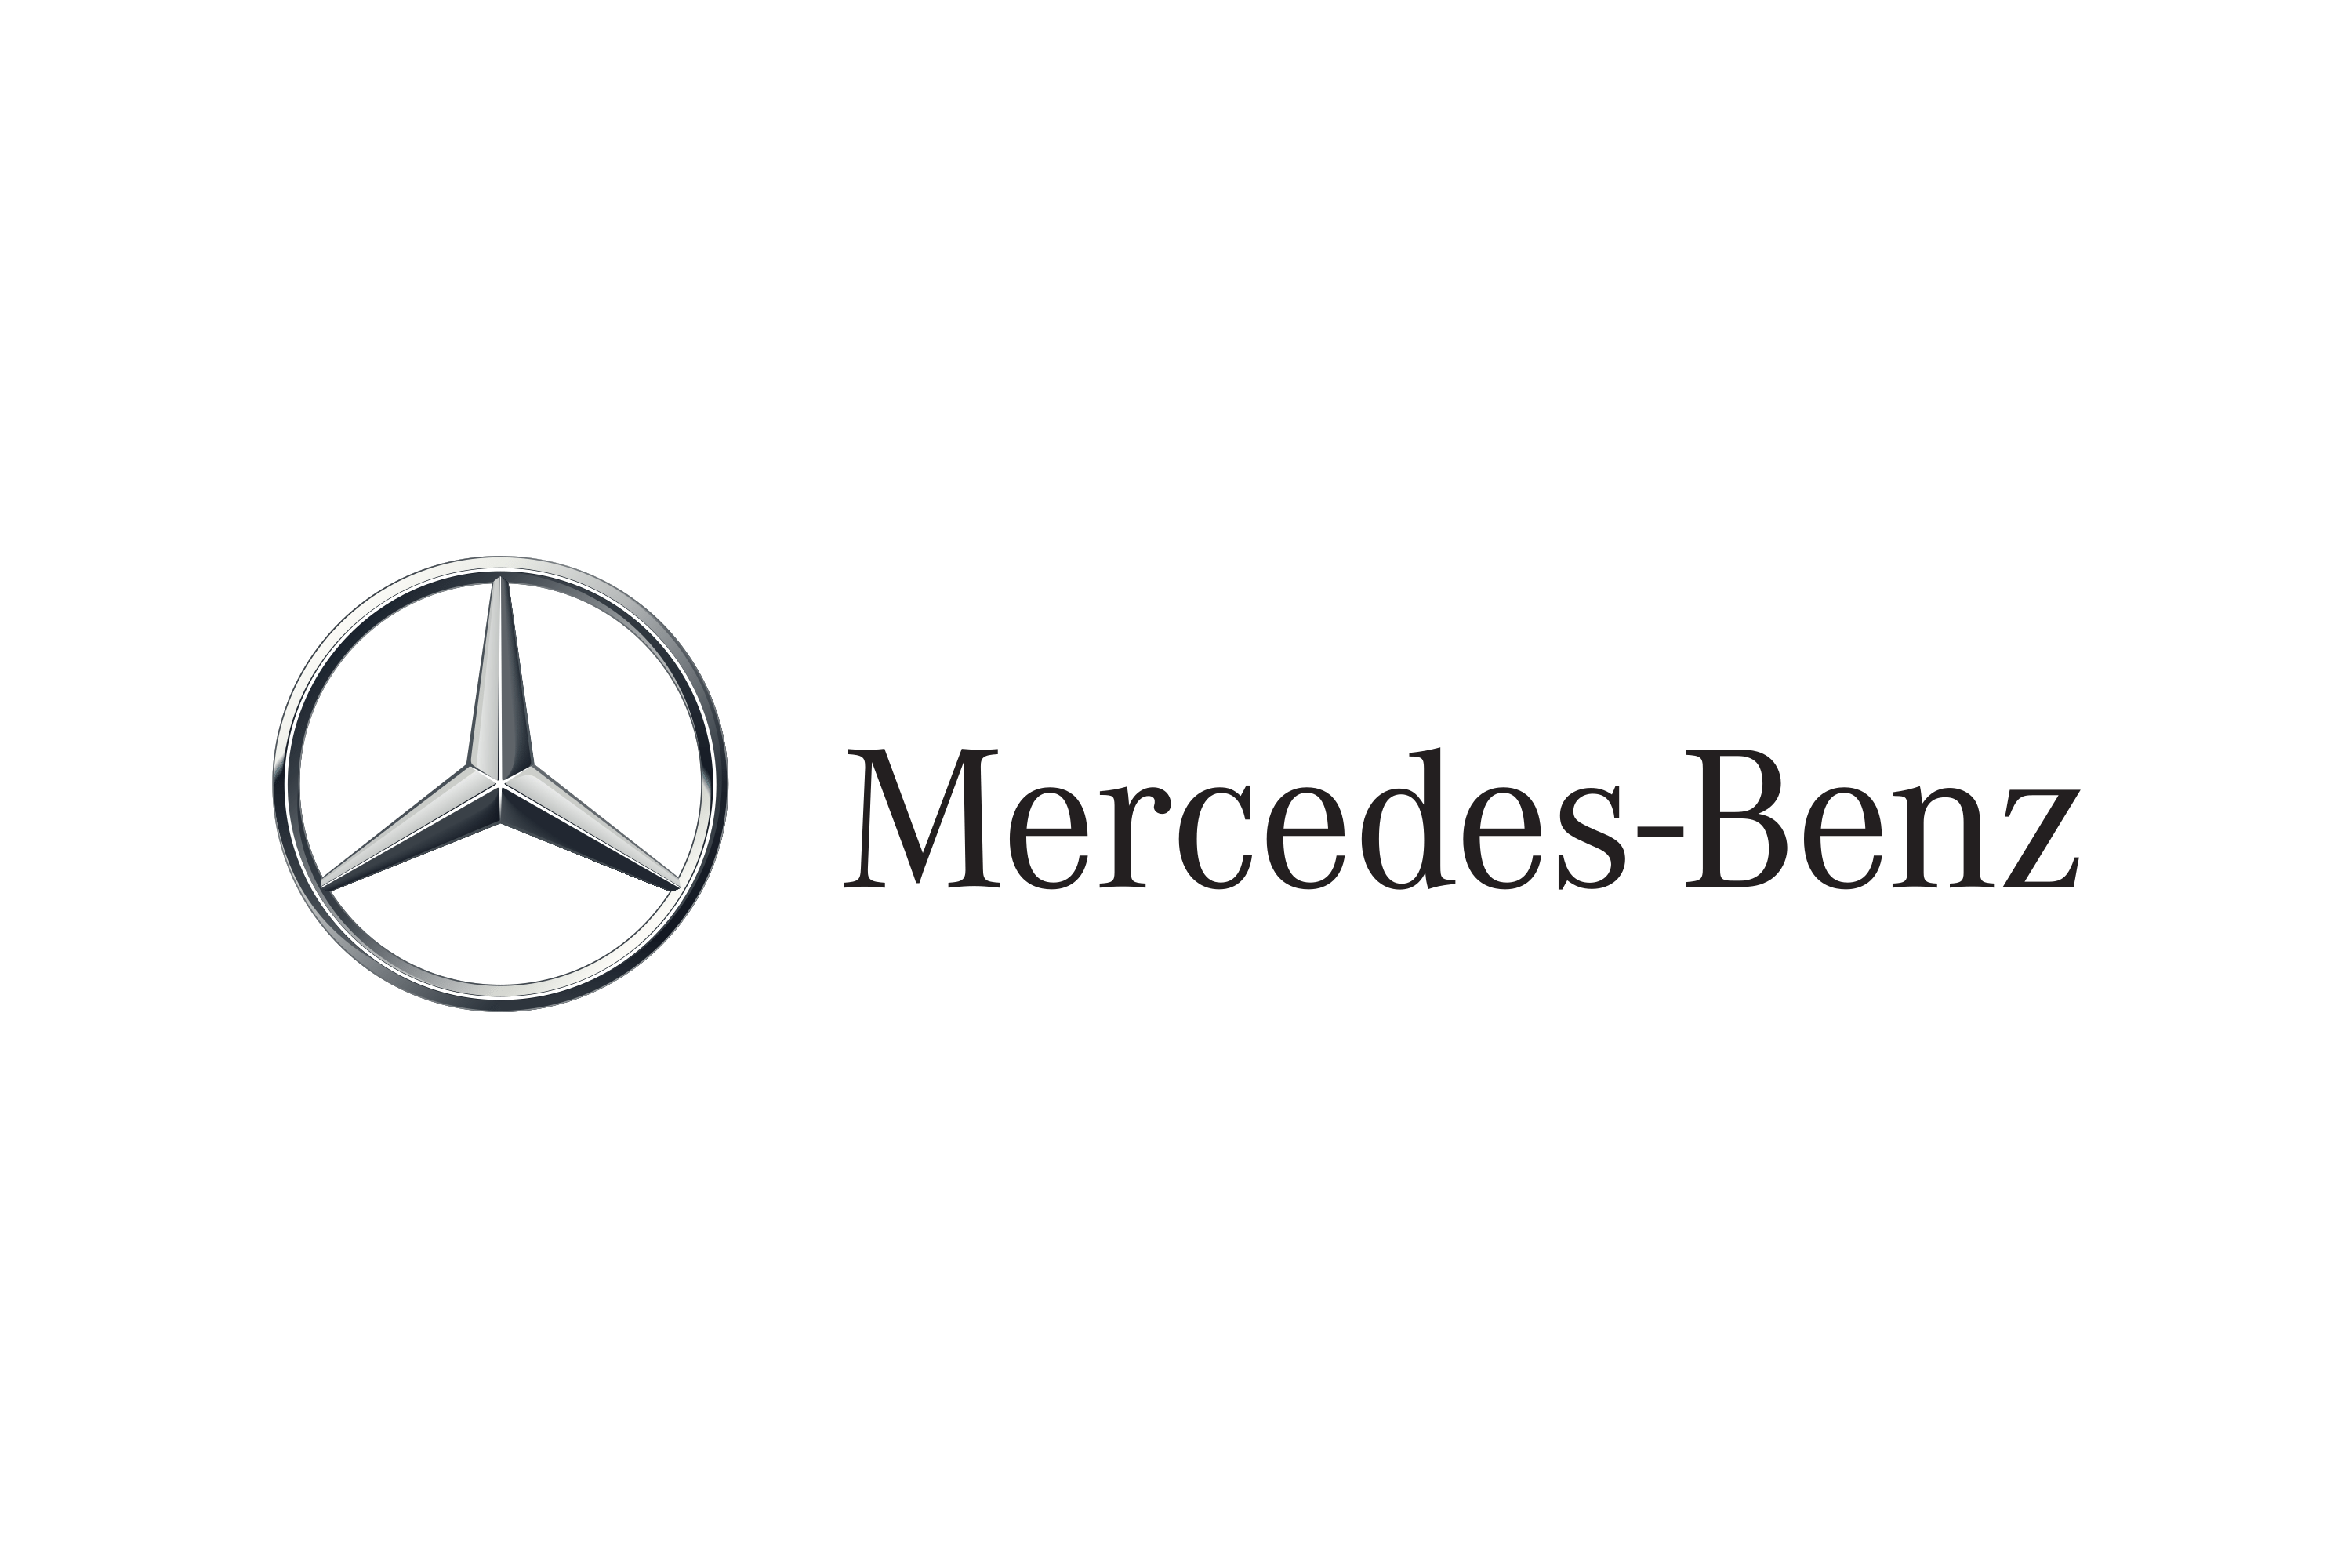 Download Mercedes-Benz Logo in SVG Vector or PNG File Format